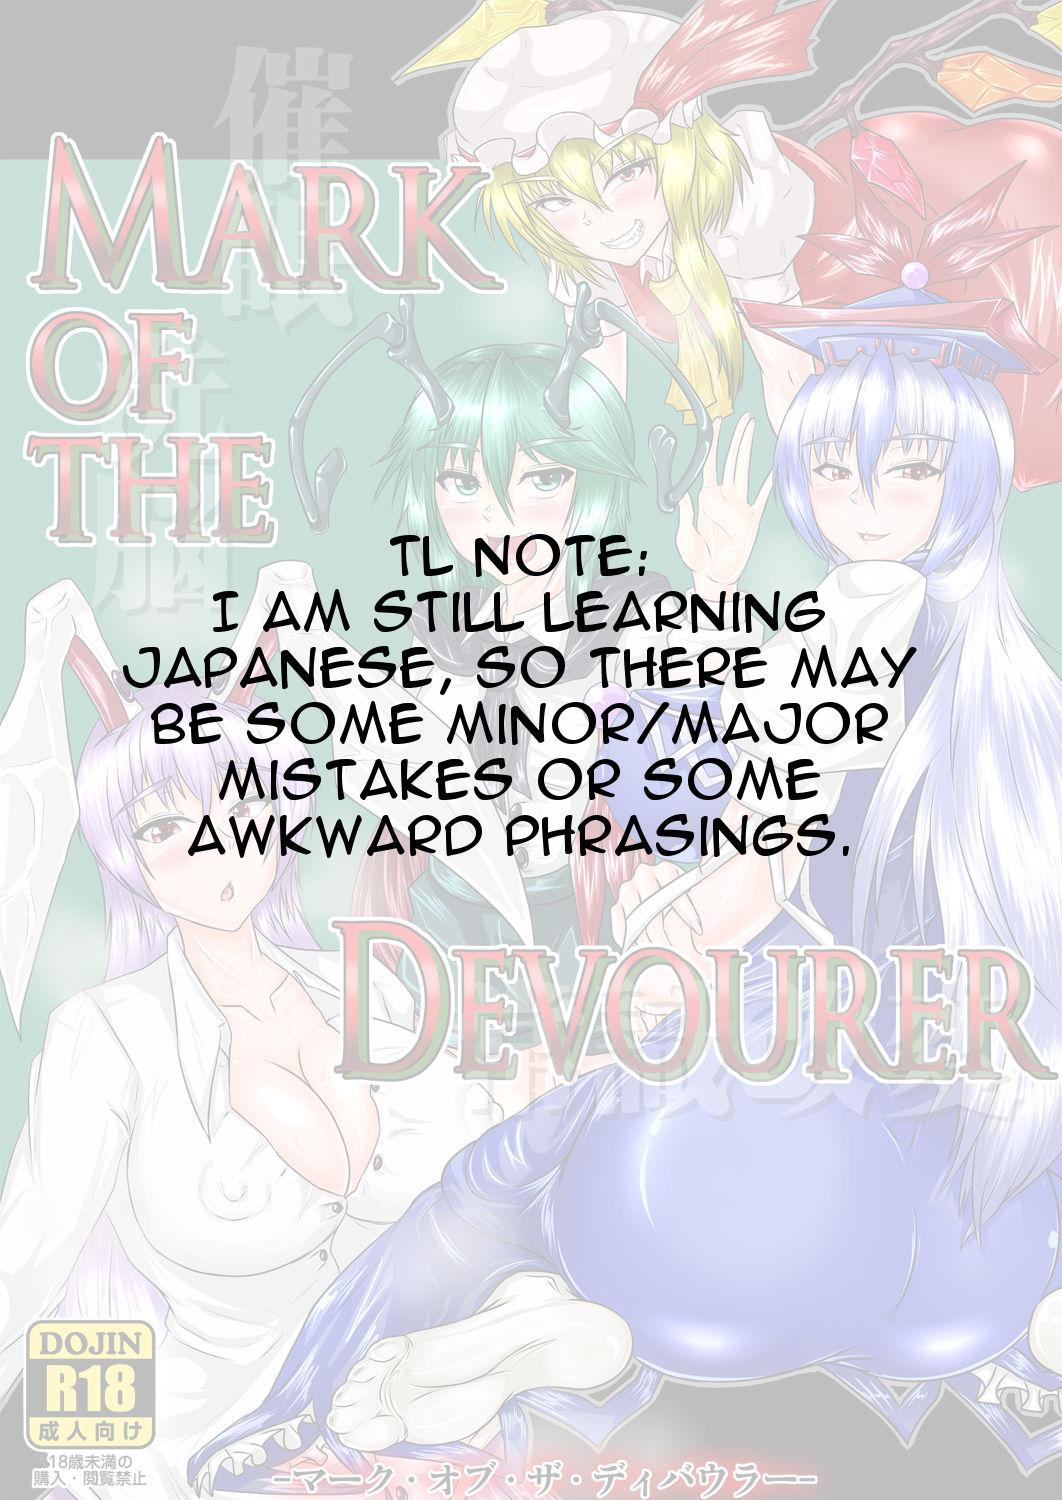 Mark of the Devourer 1